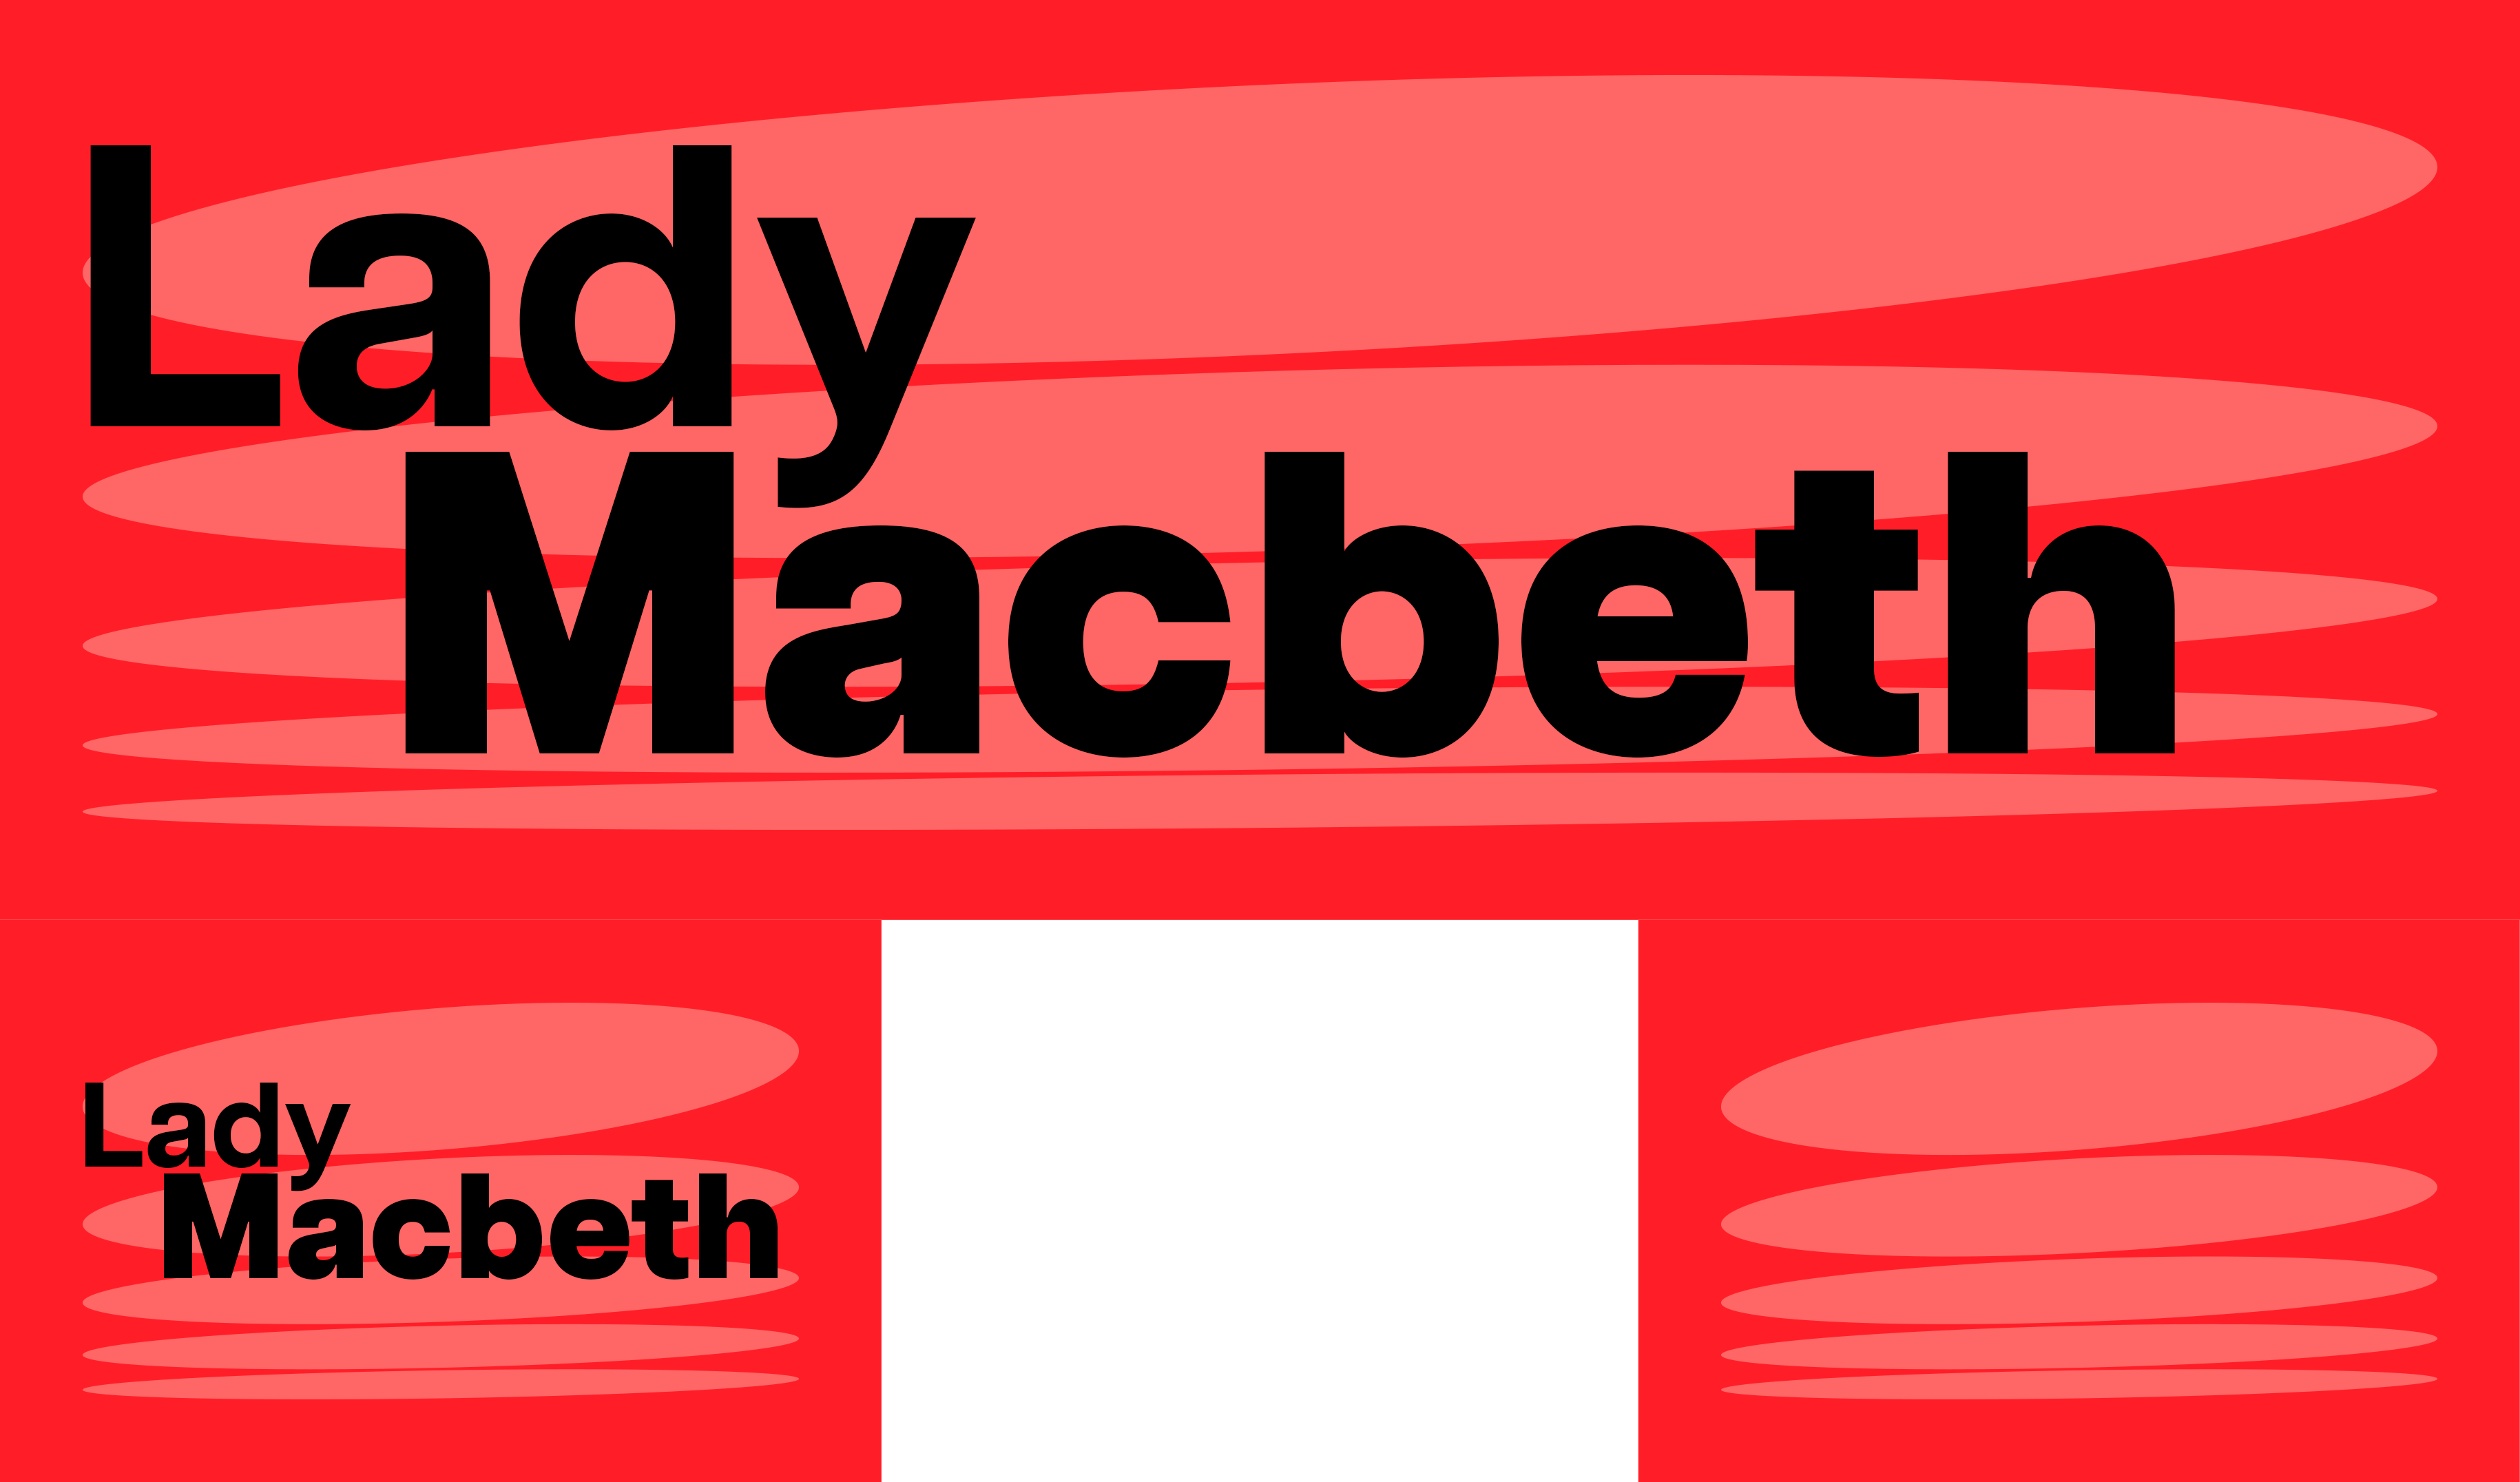 Lady Macbeth visual